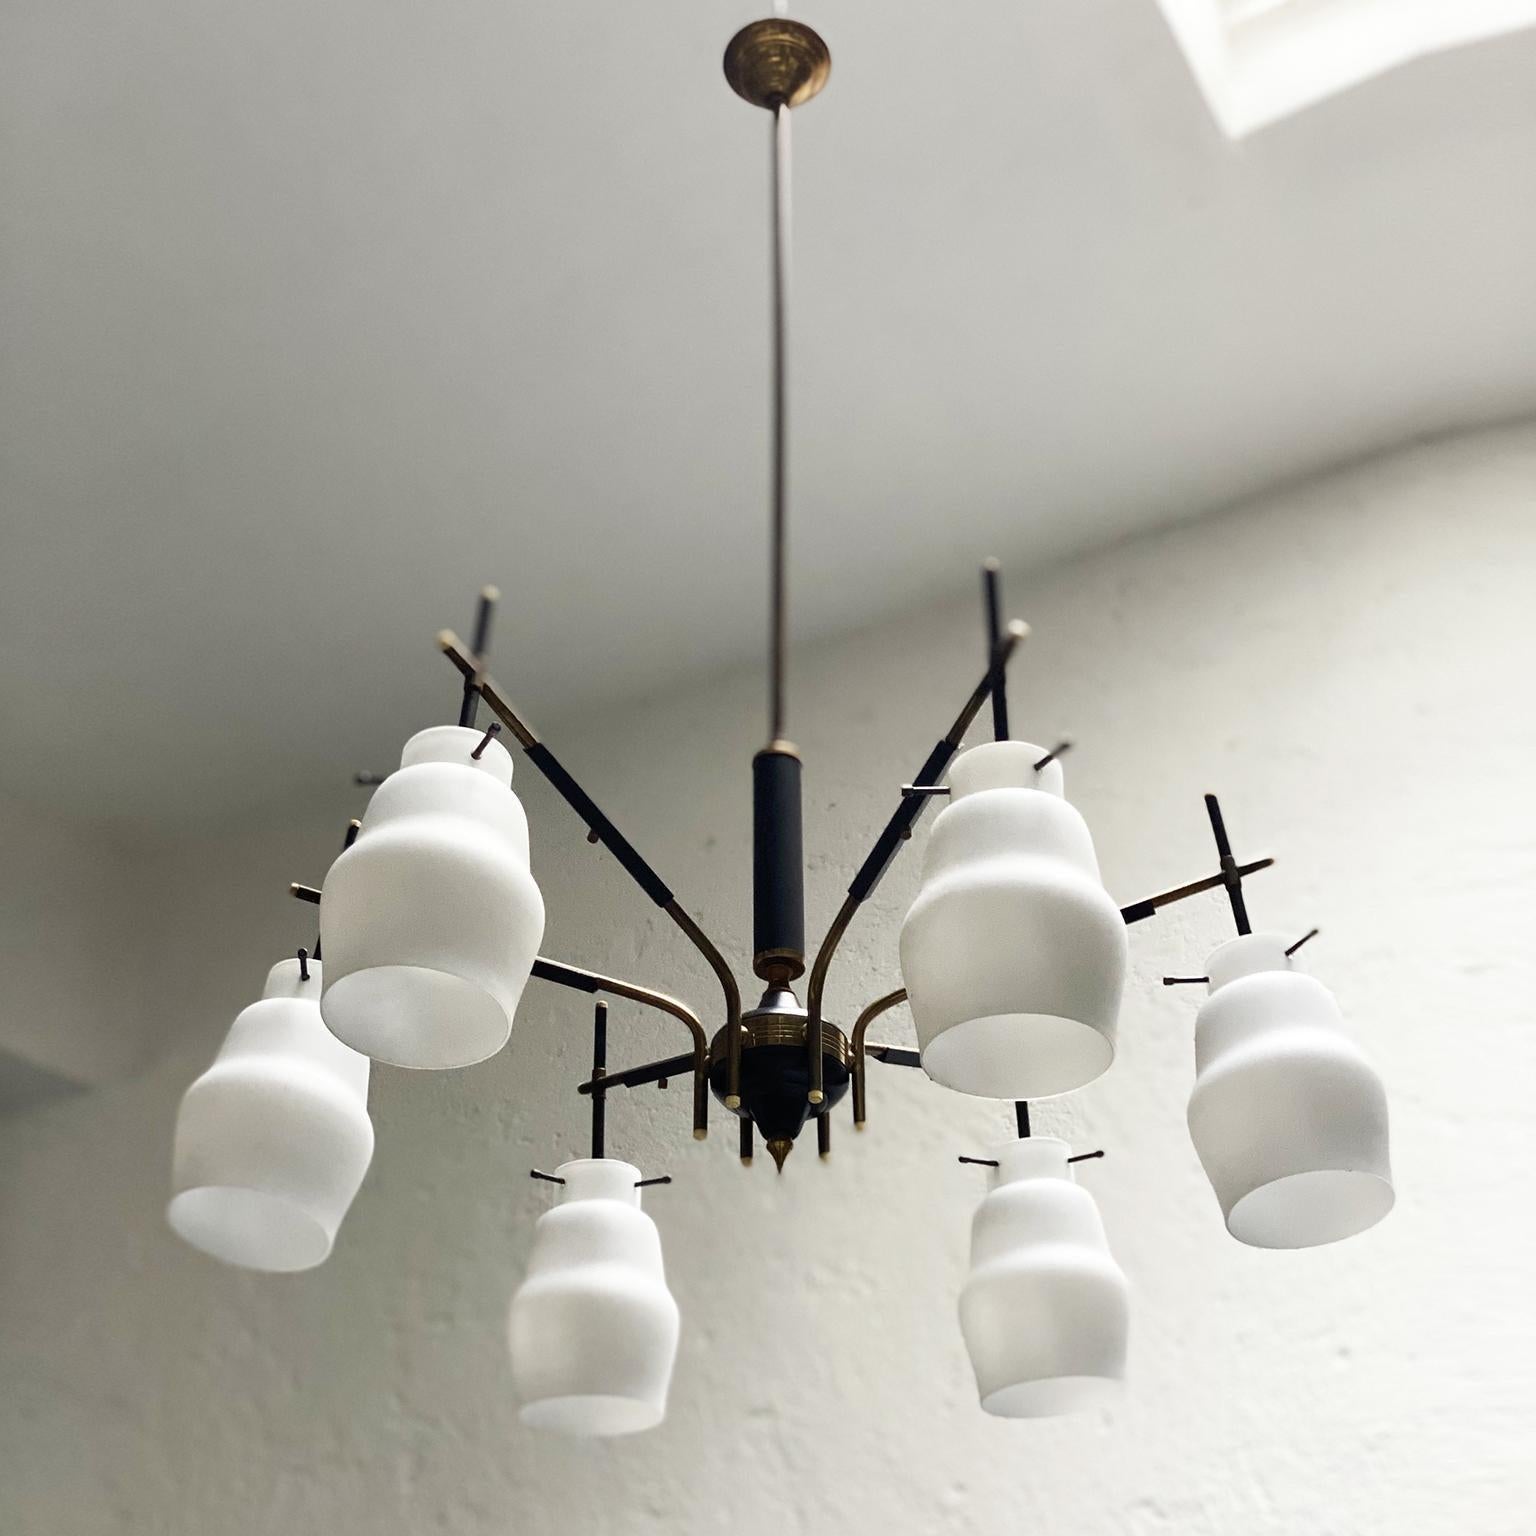 Up&Up est une charmante et rare lampe suspendue/chandelier, fabriquée en Italie dans les années 1950 et probablement produite par Stilnovo. Le style du design ressemble beaucoup à plusieurs créations du célèbre fabricant de lampes italien. Réalisée